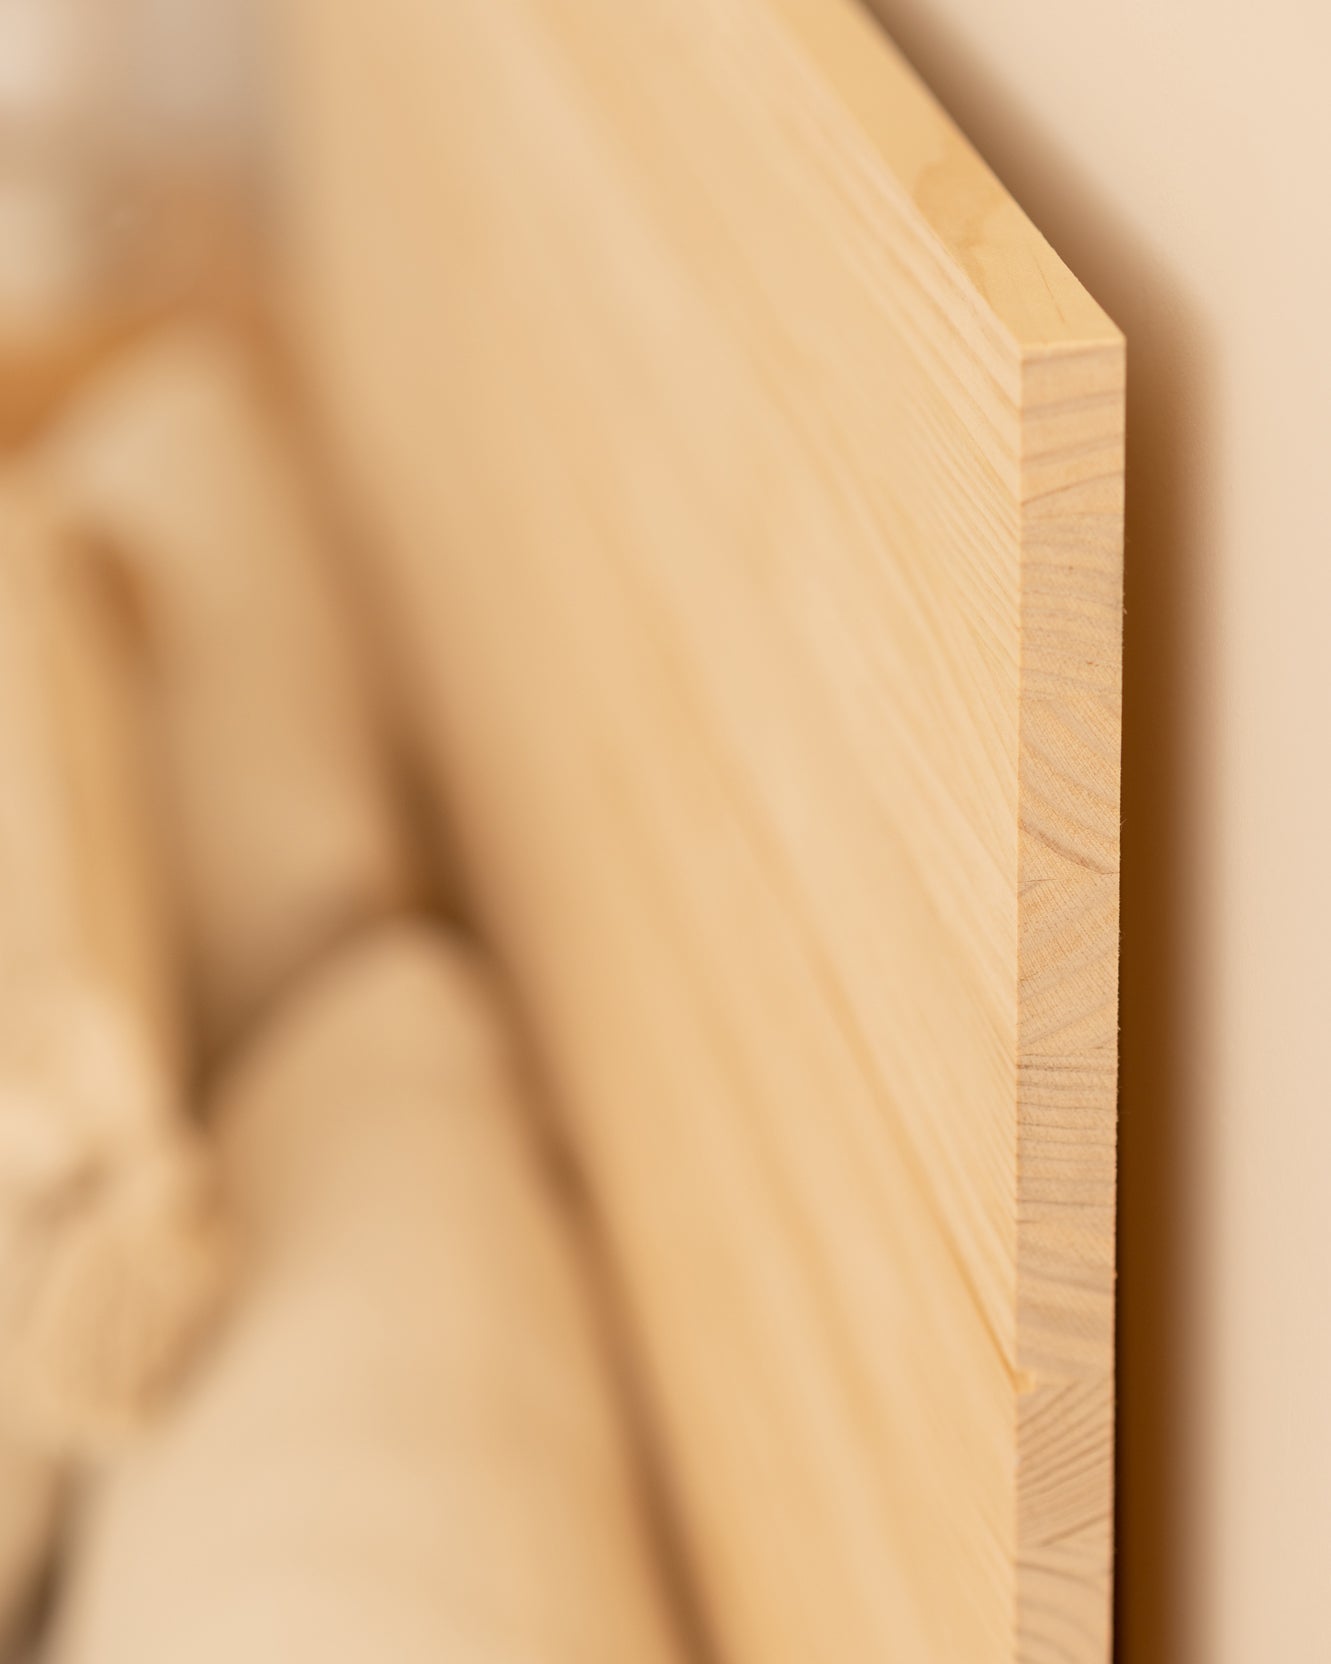 Cabecero de madera maciza en tono natural de 105x80cm - DECOWOOD